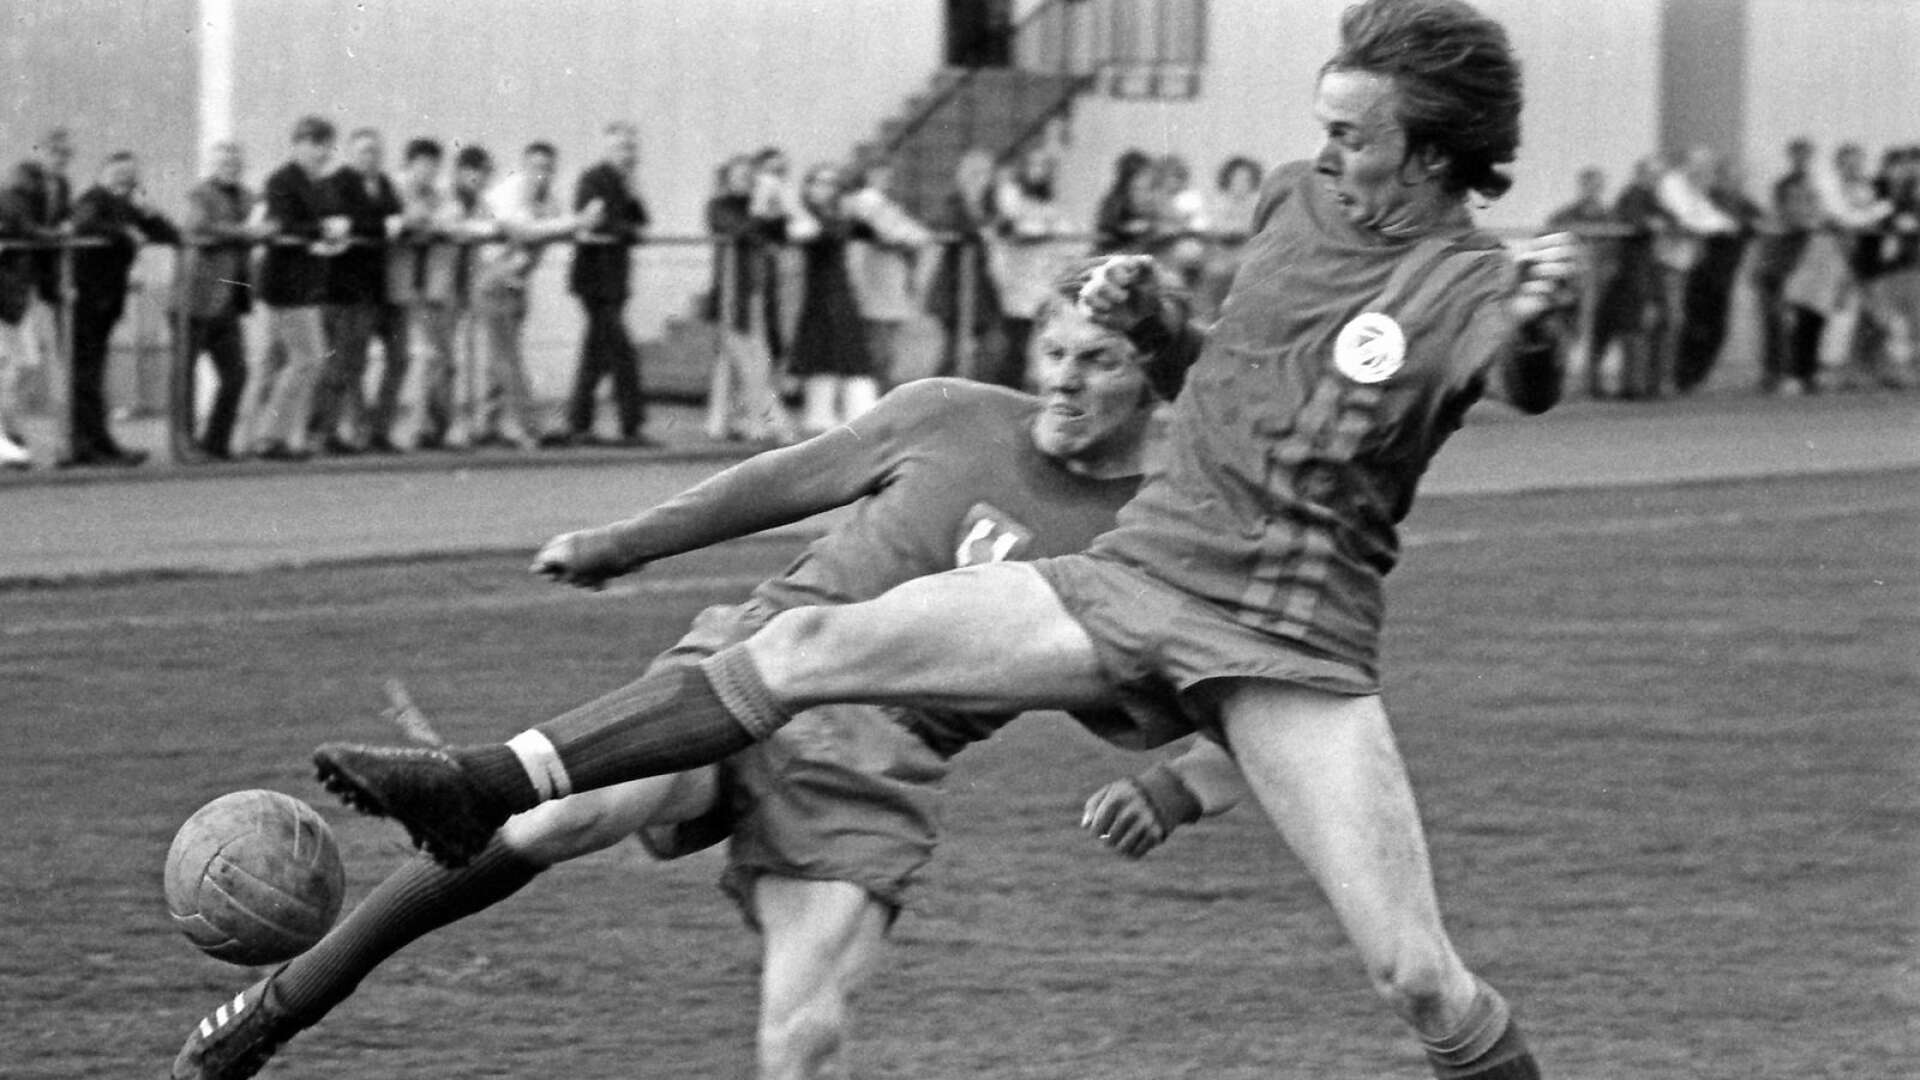 För första gången möttes Sifhälla och Säffle FF 1971 i samma division. Säffle FF vann båda derbymatcherna och tog över rollen som ”bäst i sta´n”. I Sifhälla spelade emellertid en yngling som med tiden skulle bli en av världens mest uppmärksammade tränare, Sven-Göran ”Svennis” Eriksson, men det anade ingen då. Bilden är från en match mot Bengtsfors 1971. 